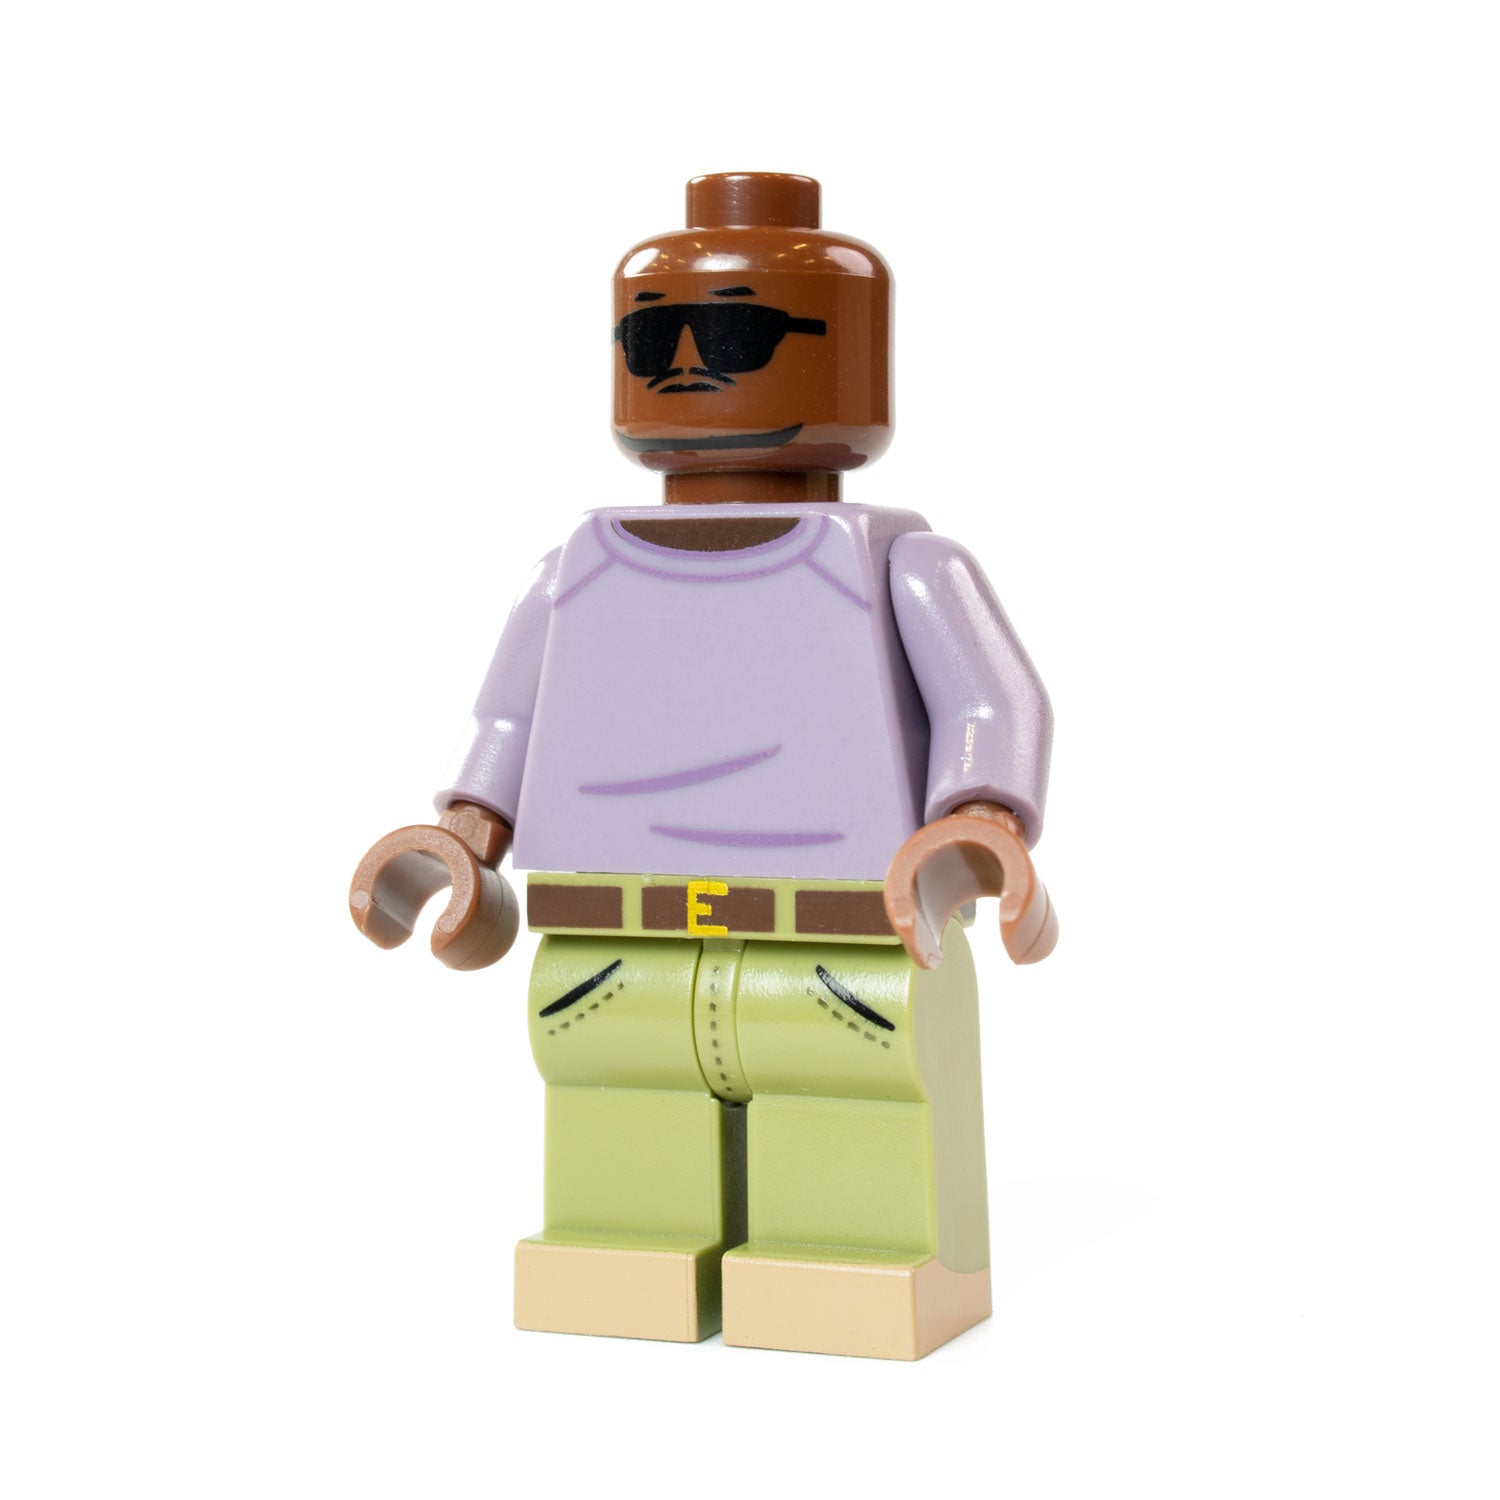 Custom Printed Lego - Brawling Buddy - The Minifig Co.